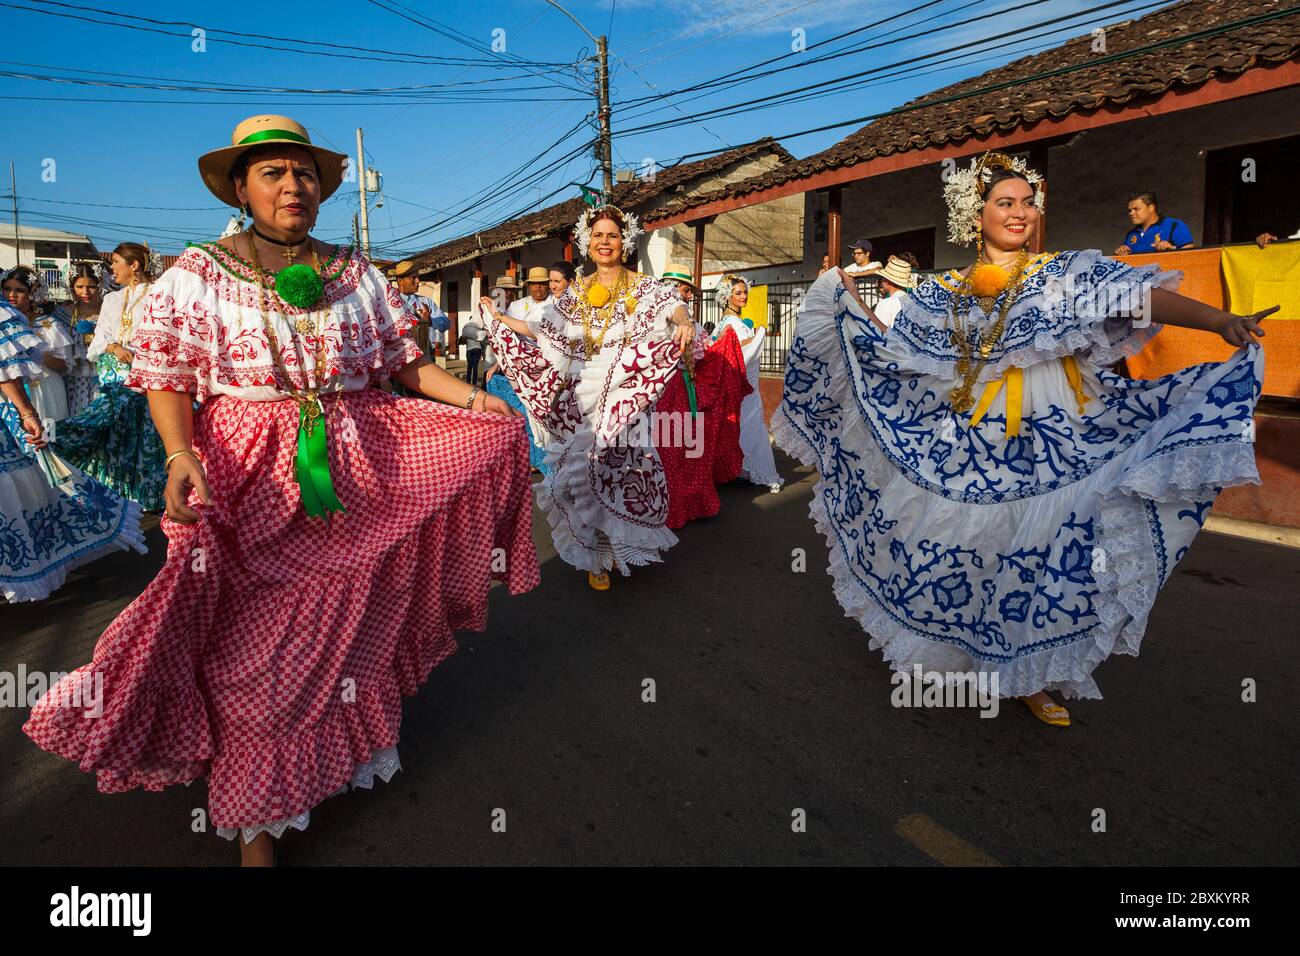 Frauen in Polleras während der jährlichen Veranstaltung "El desfile de las mil Polleras" (tausend Polleras) in Las Tablas, Provinz Los Santos, Republik Panama. Stockfoto